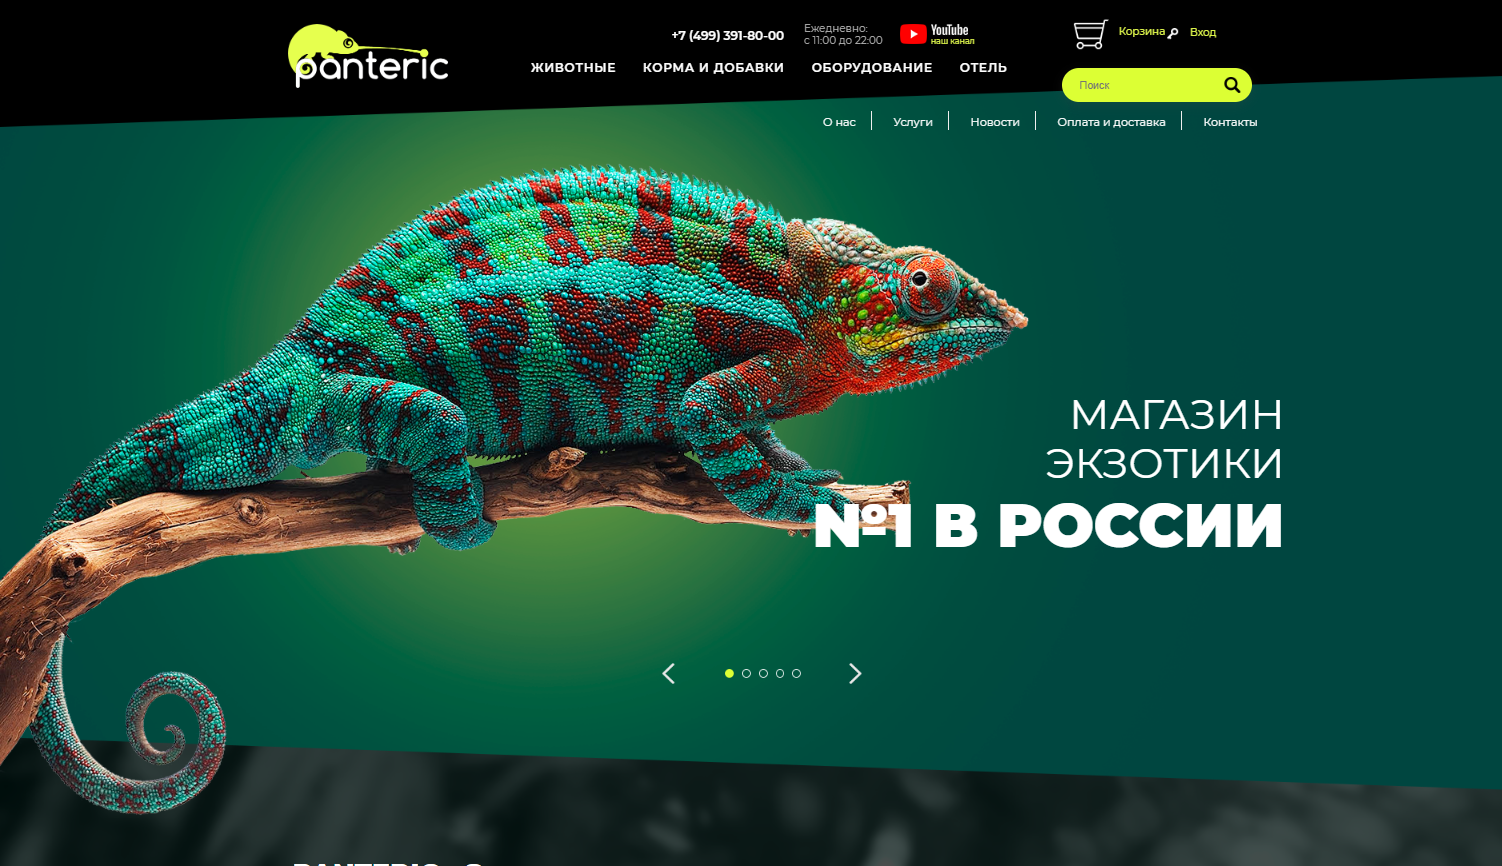 Сайт для интернет-магазина экзотических товаров (panteric.ru), 2018 год